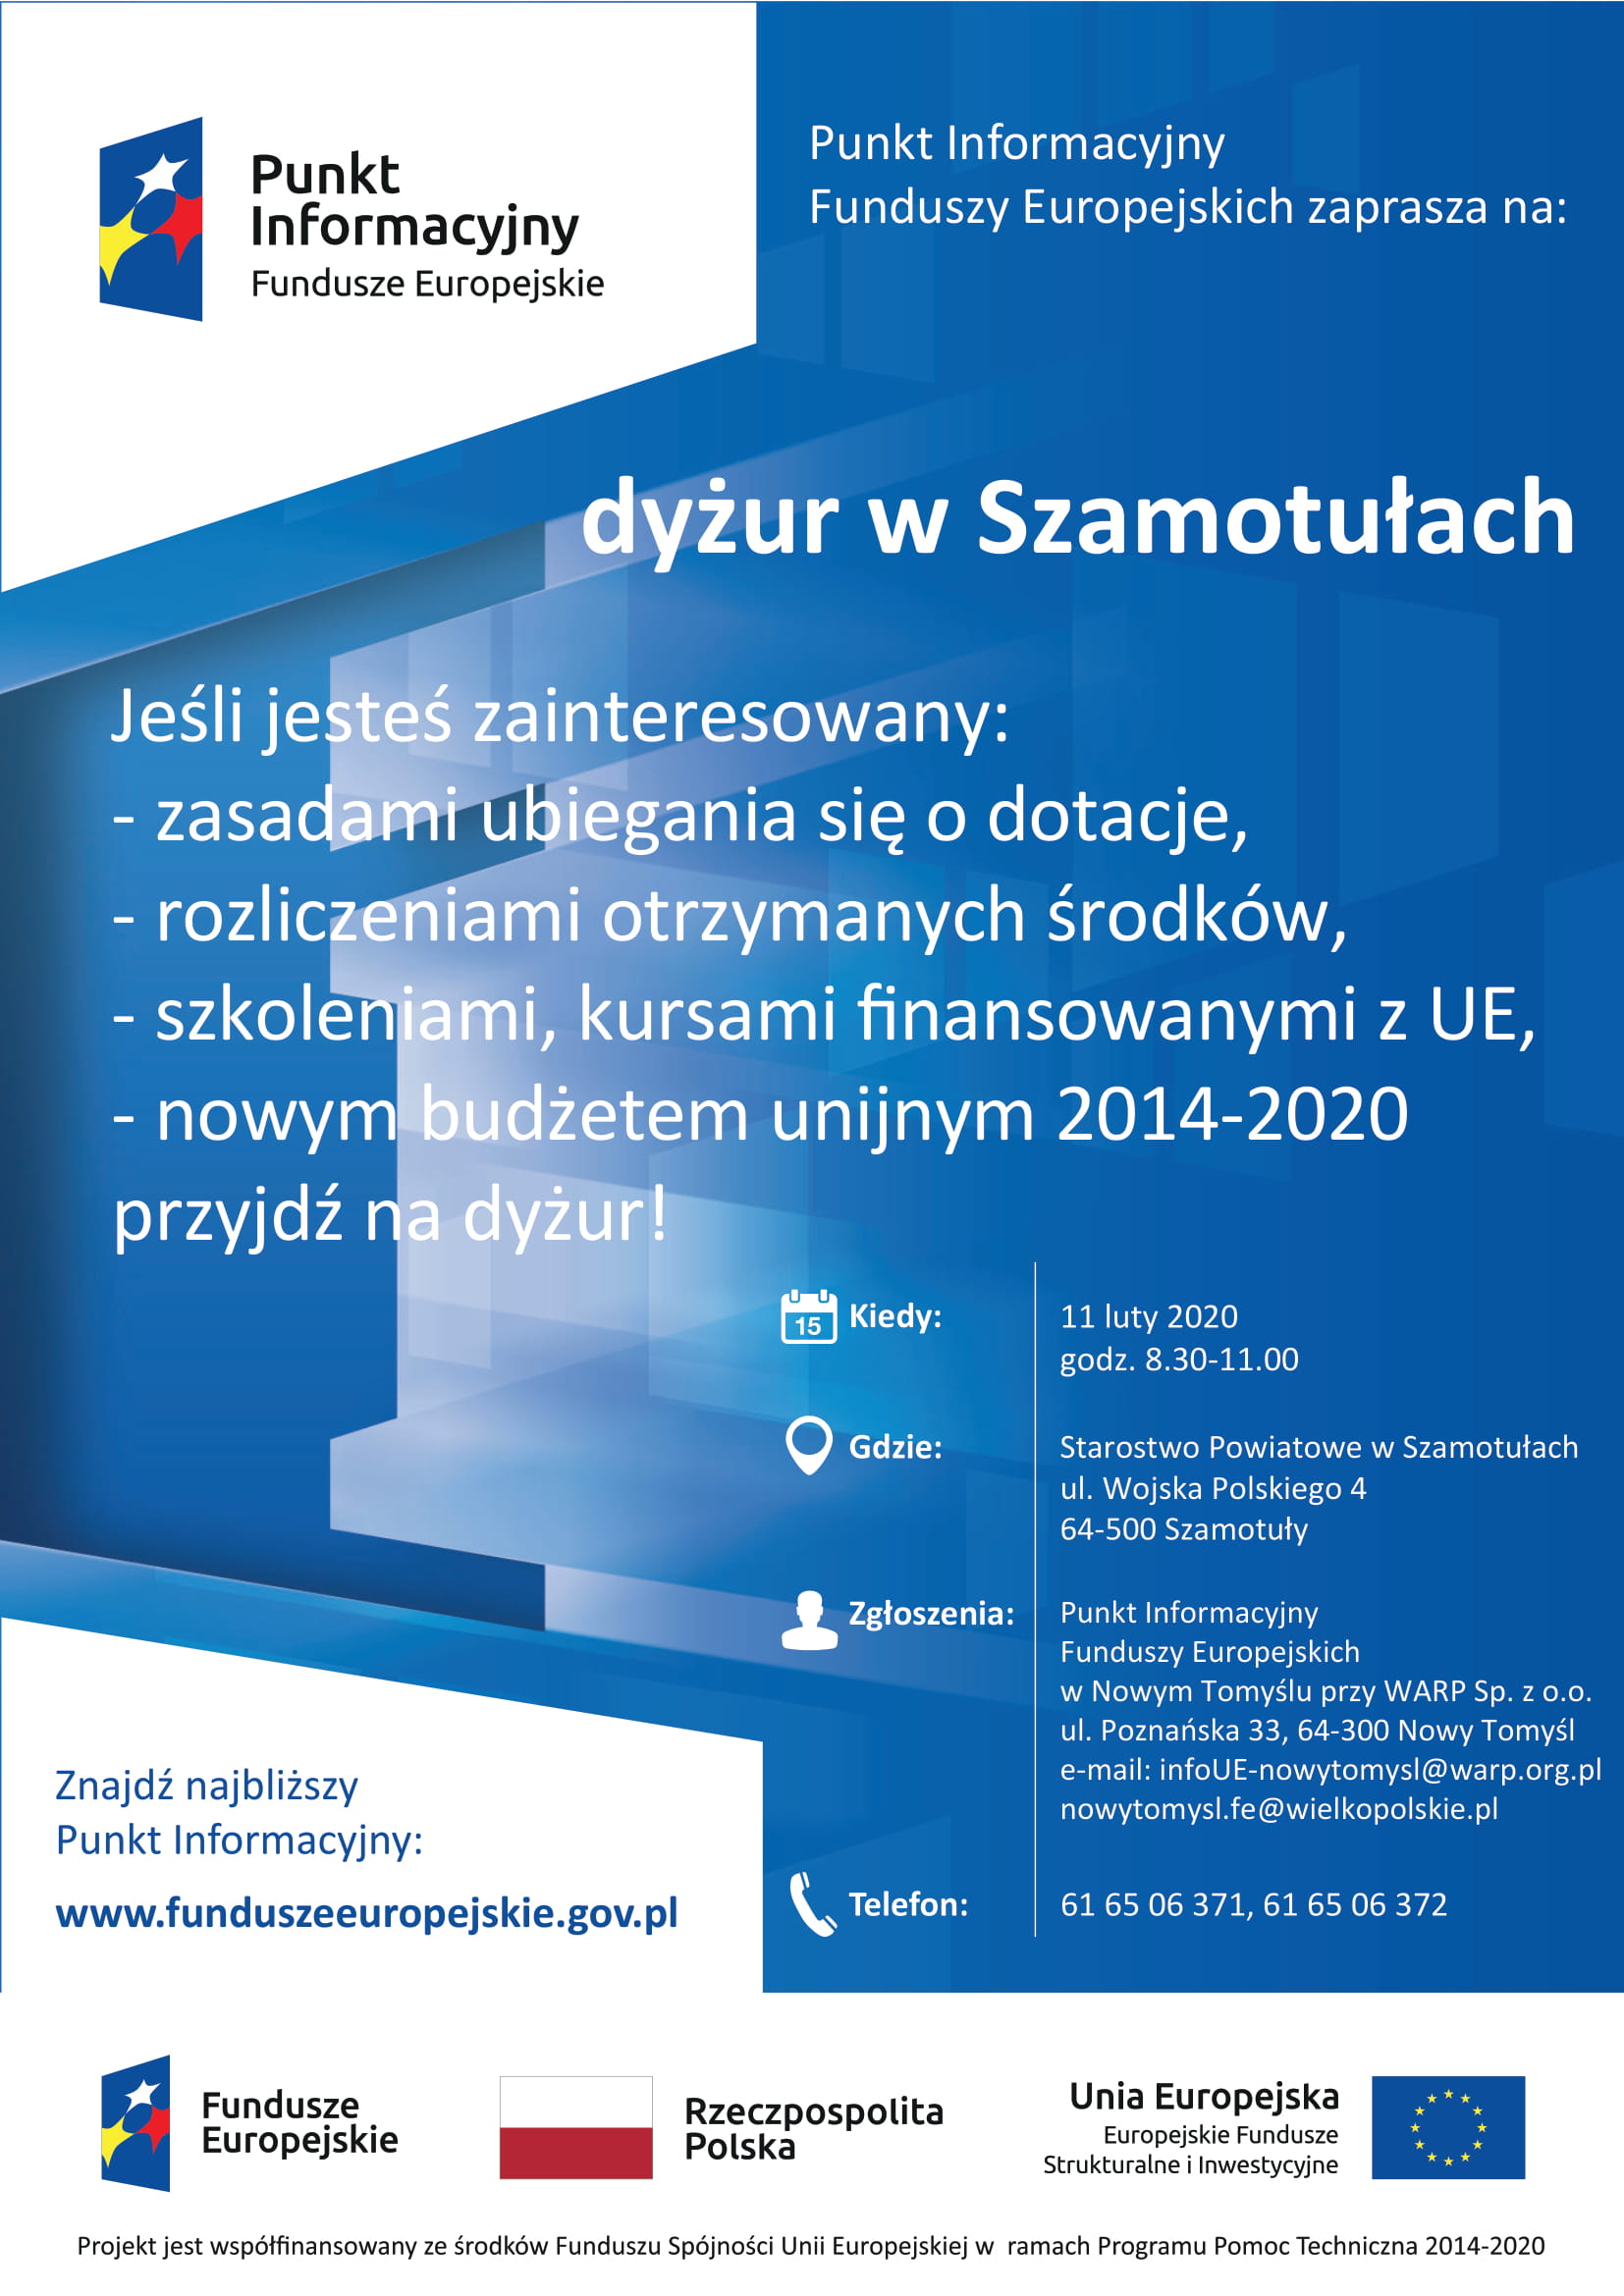 Plakat promujący dyżur Punktu Informacyjnego Funduszy Europejskich.